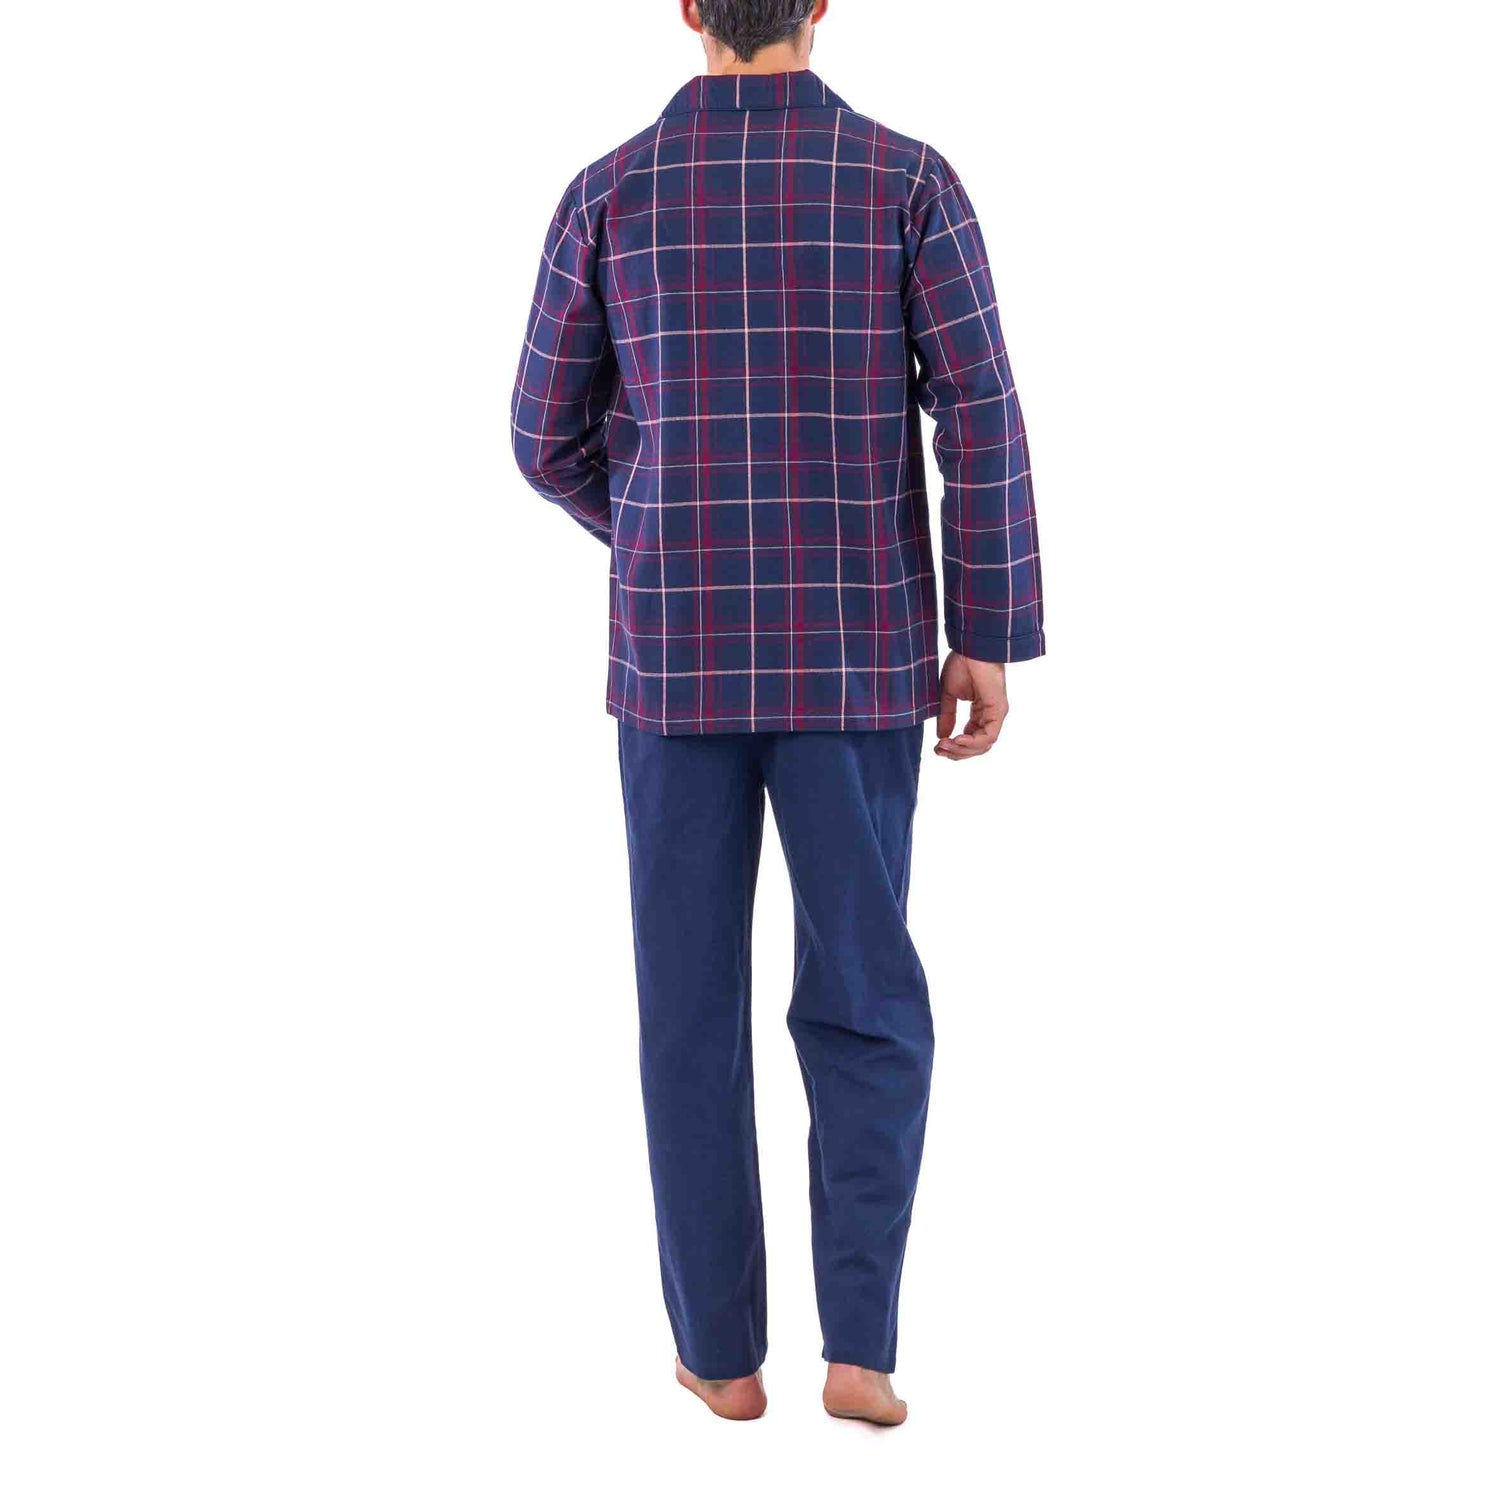 Pyjama Long Ouvert à Carreaux Ecossais en Flanelle de Pur Coton Peigné Bleu Marine